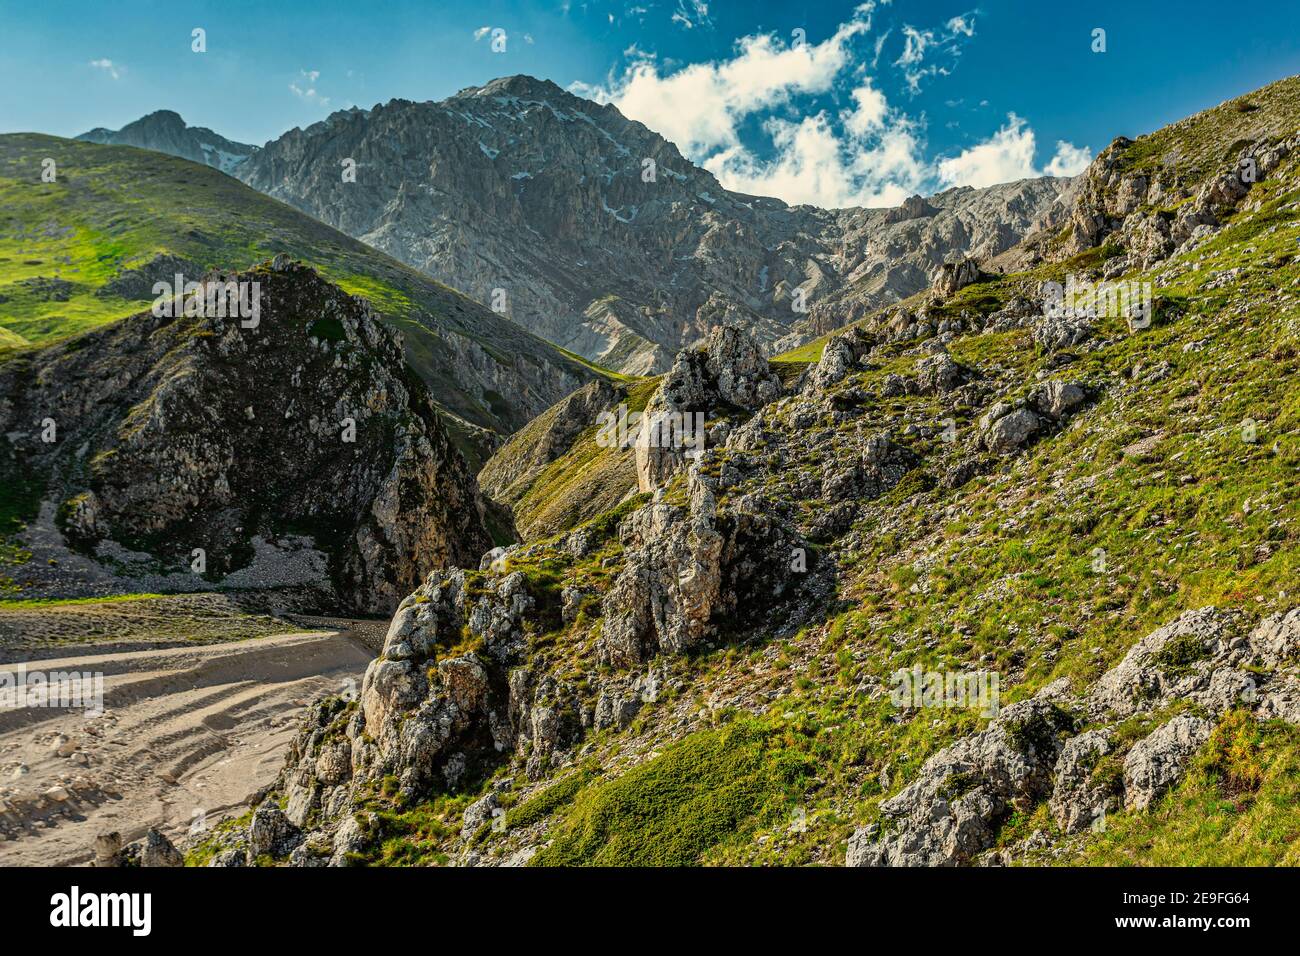 Una delle tante valli che fiancheggiano l'altopiano di campo Imperatore. Sullo sfondo il Monte Prena della catena montuosa del Gran Sasso. Foto Stock